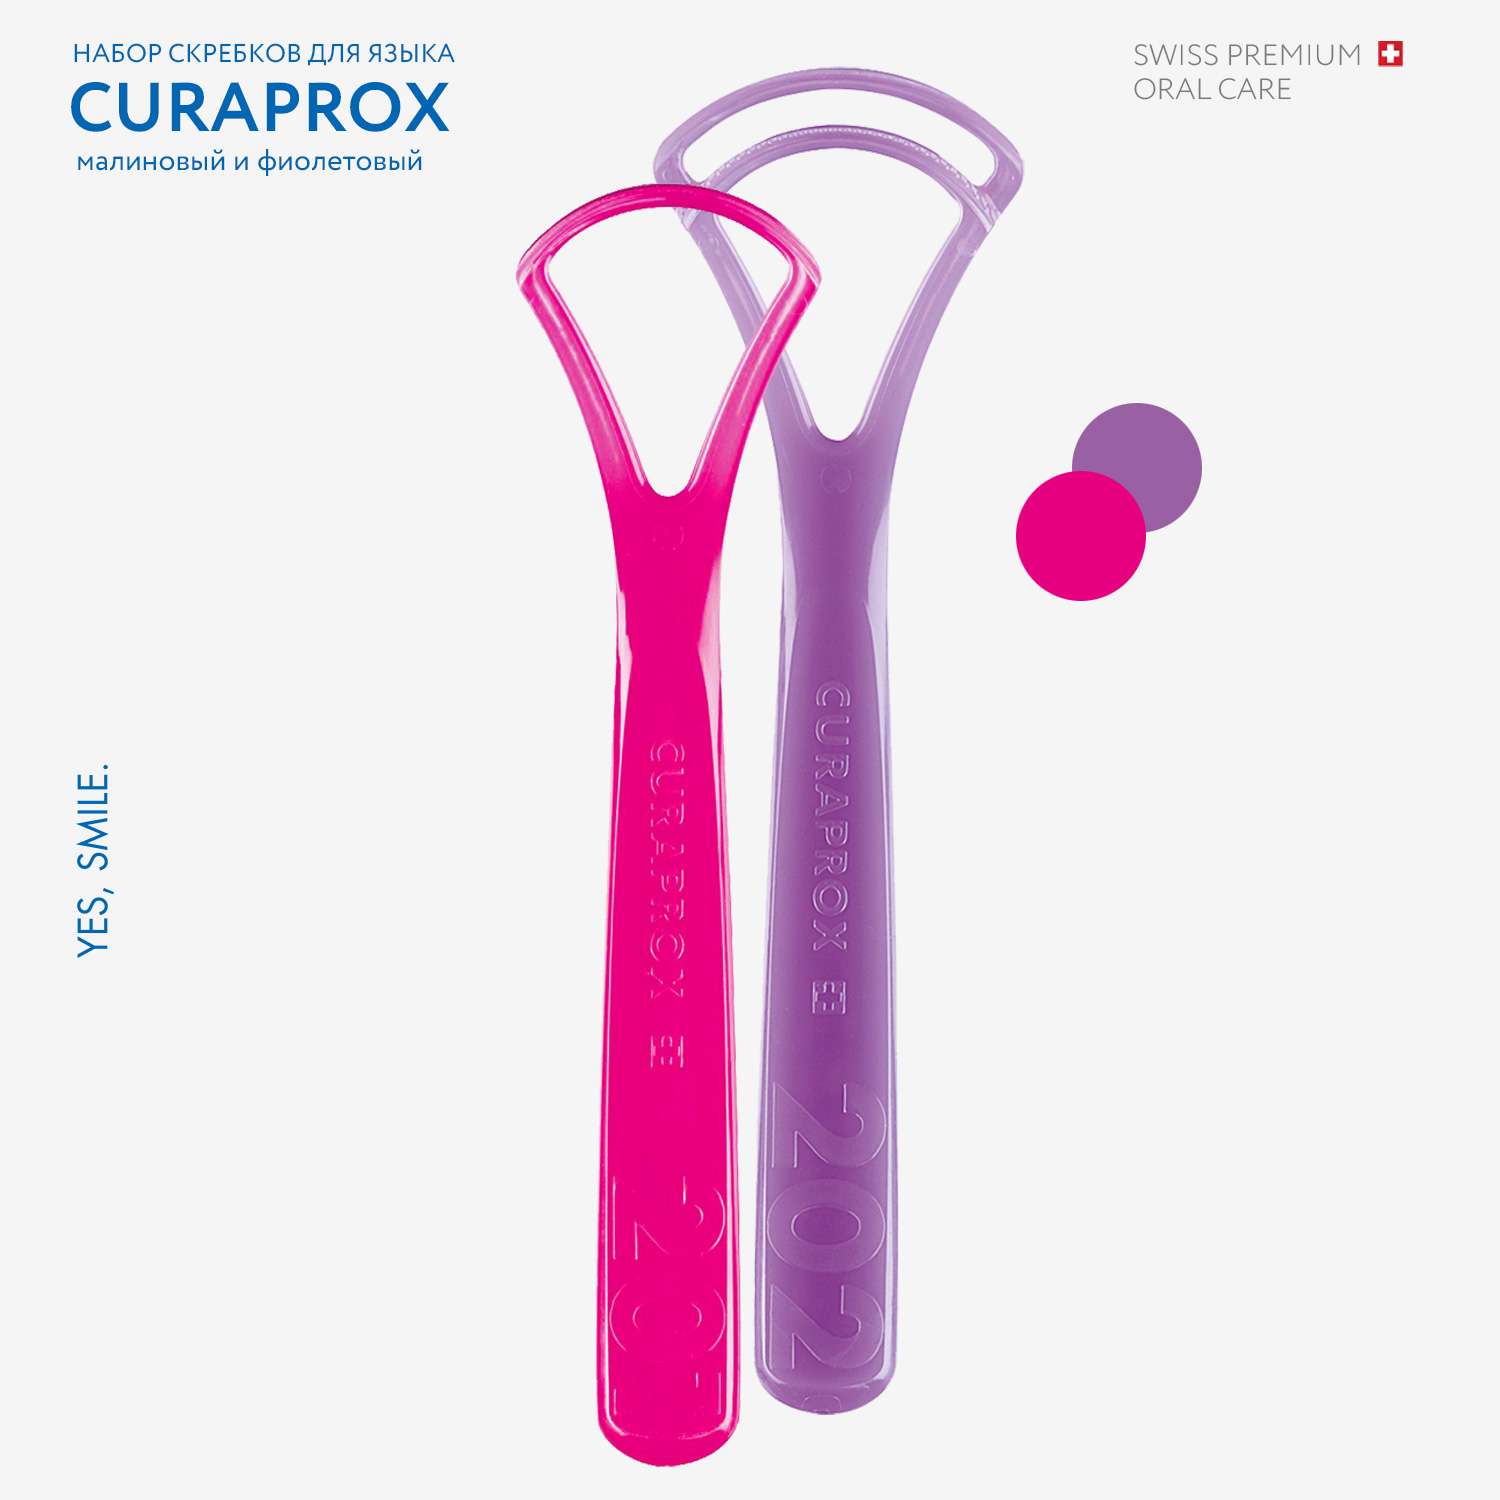 Набор скребков для языка Curaprox малиновый фиолетовый - фото 2